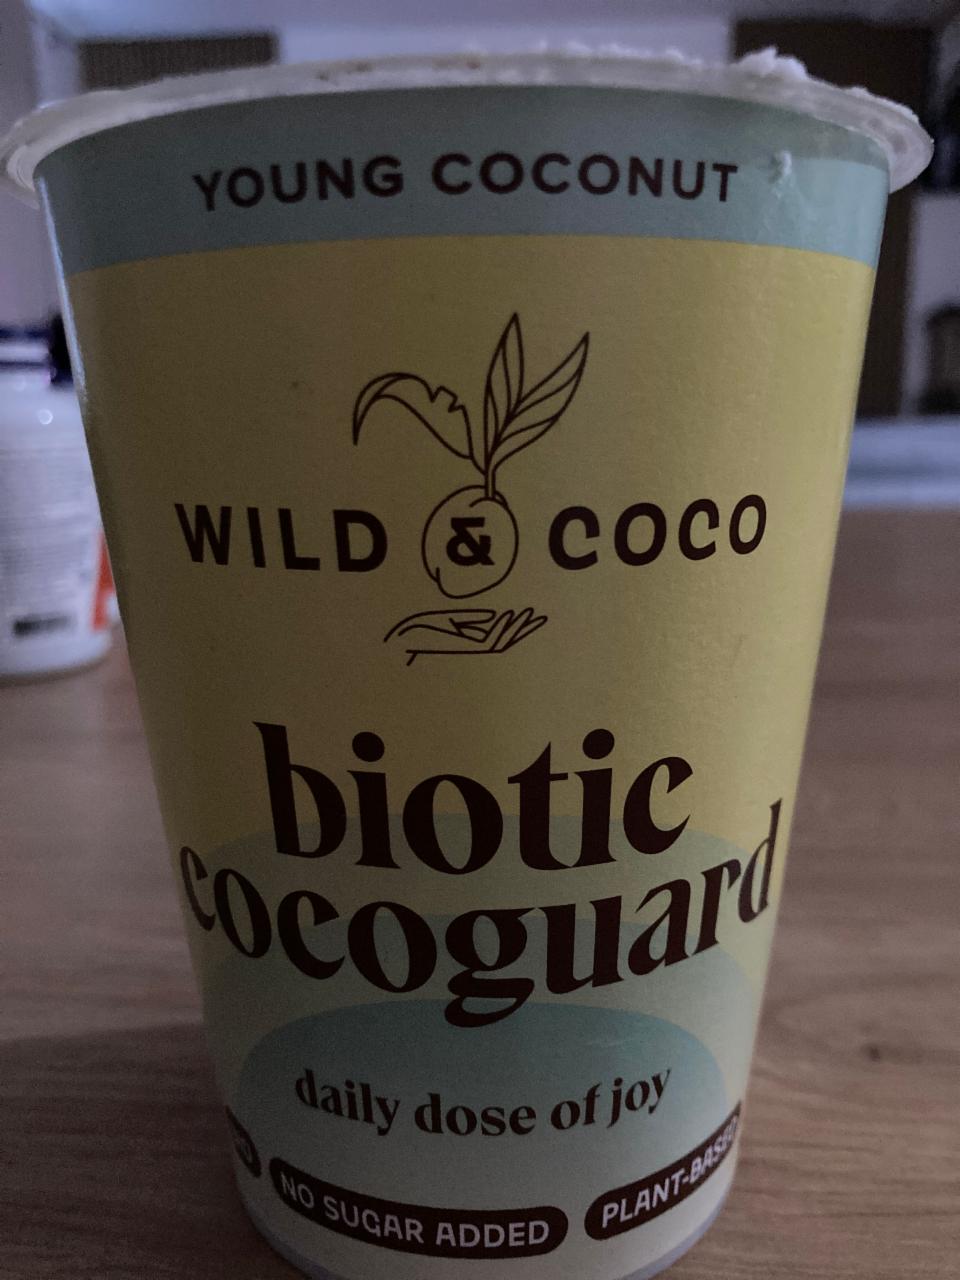 Fotografie - Biotic Cocoguard Young Coconut Wild & Coco